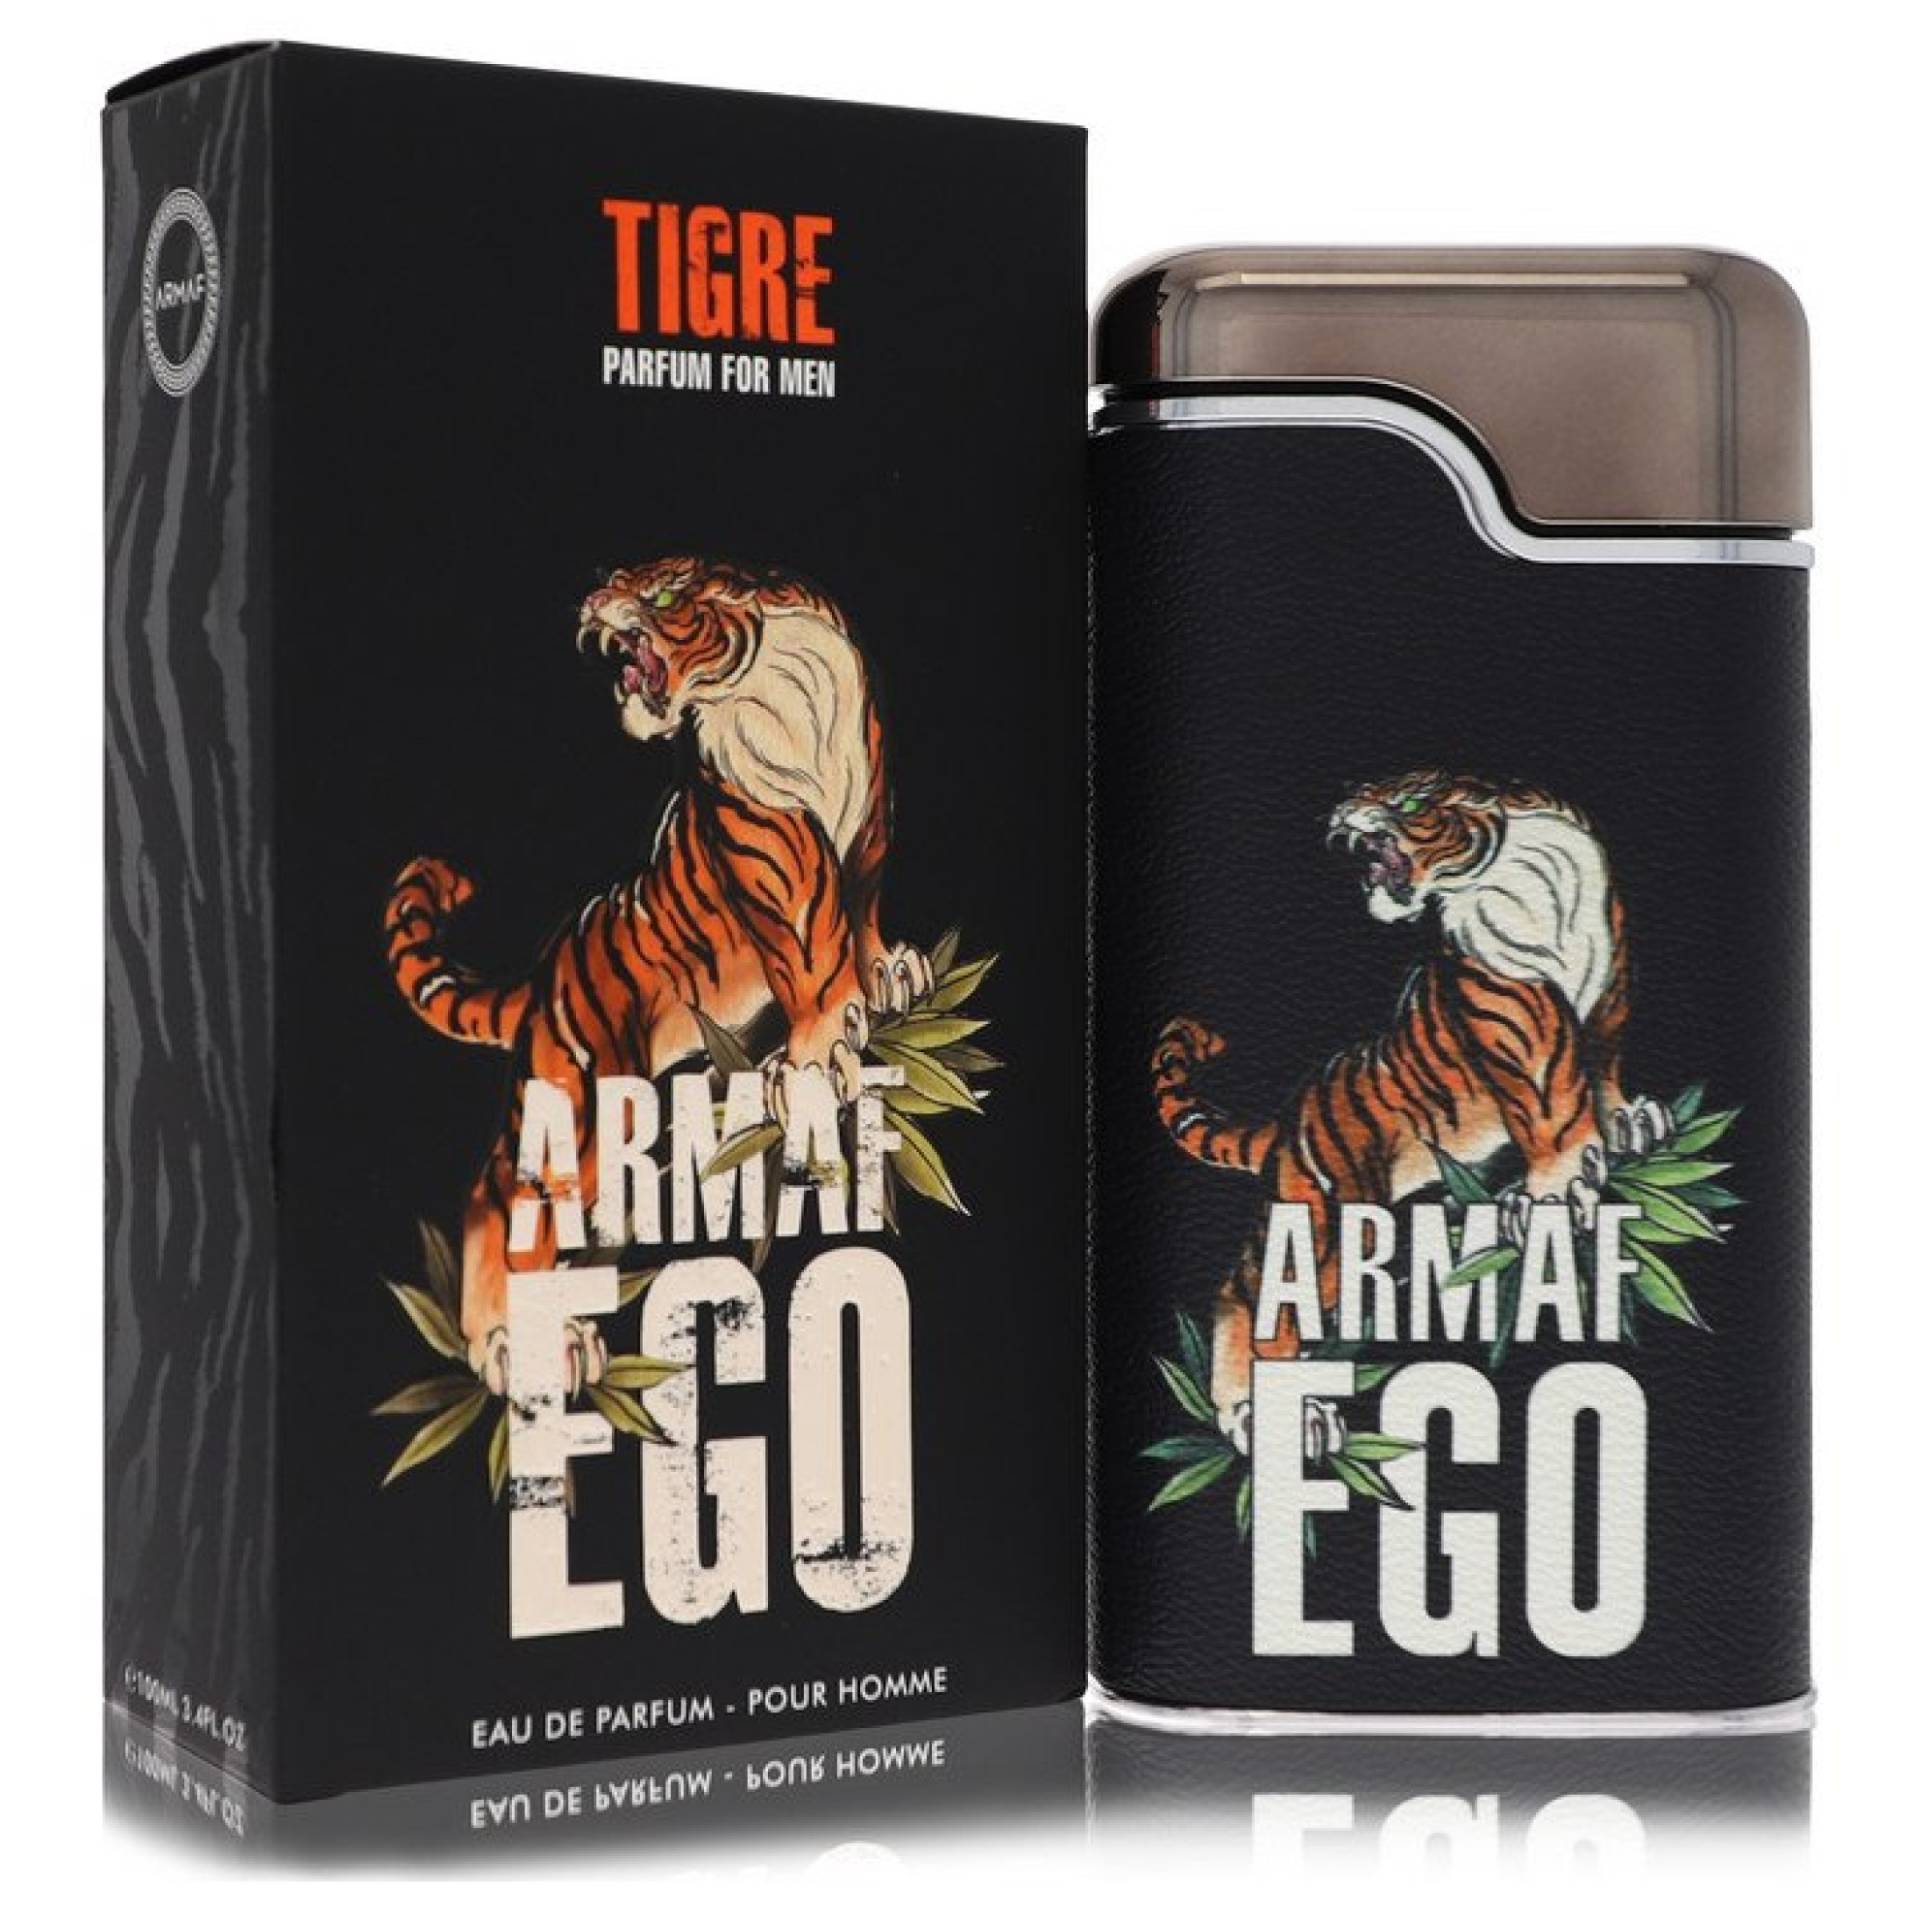 Armaf Ego Tigre Eau De Parfum Spray 100 ml von Armaf